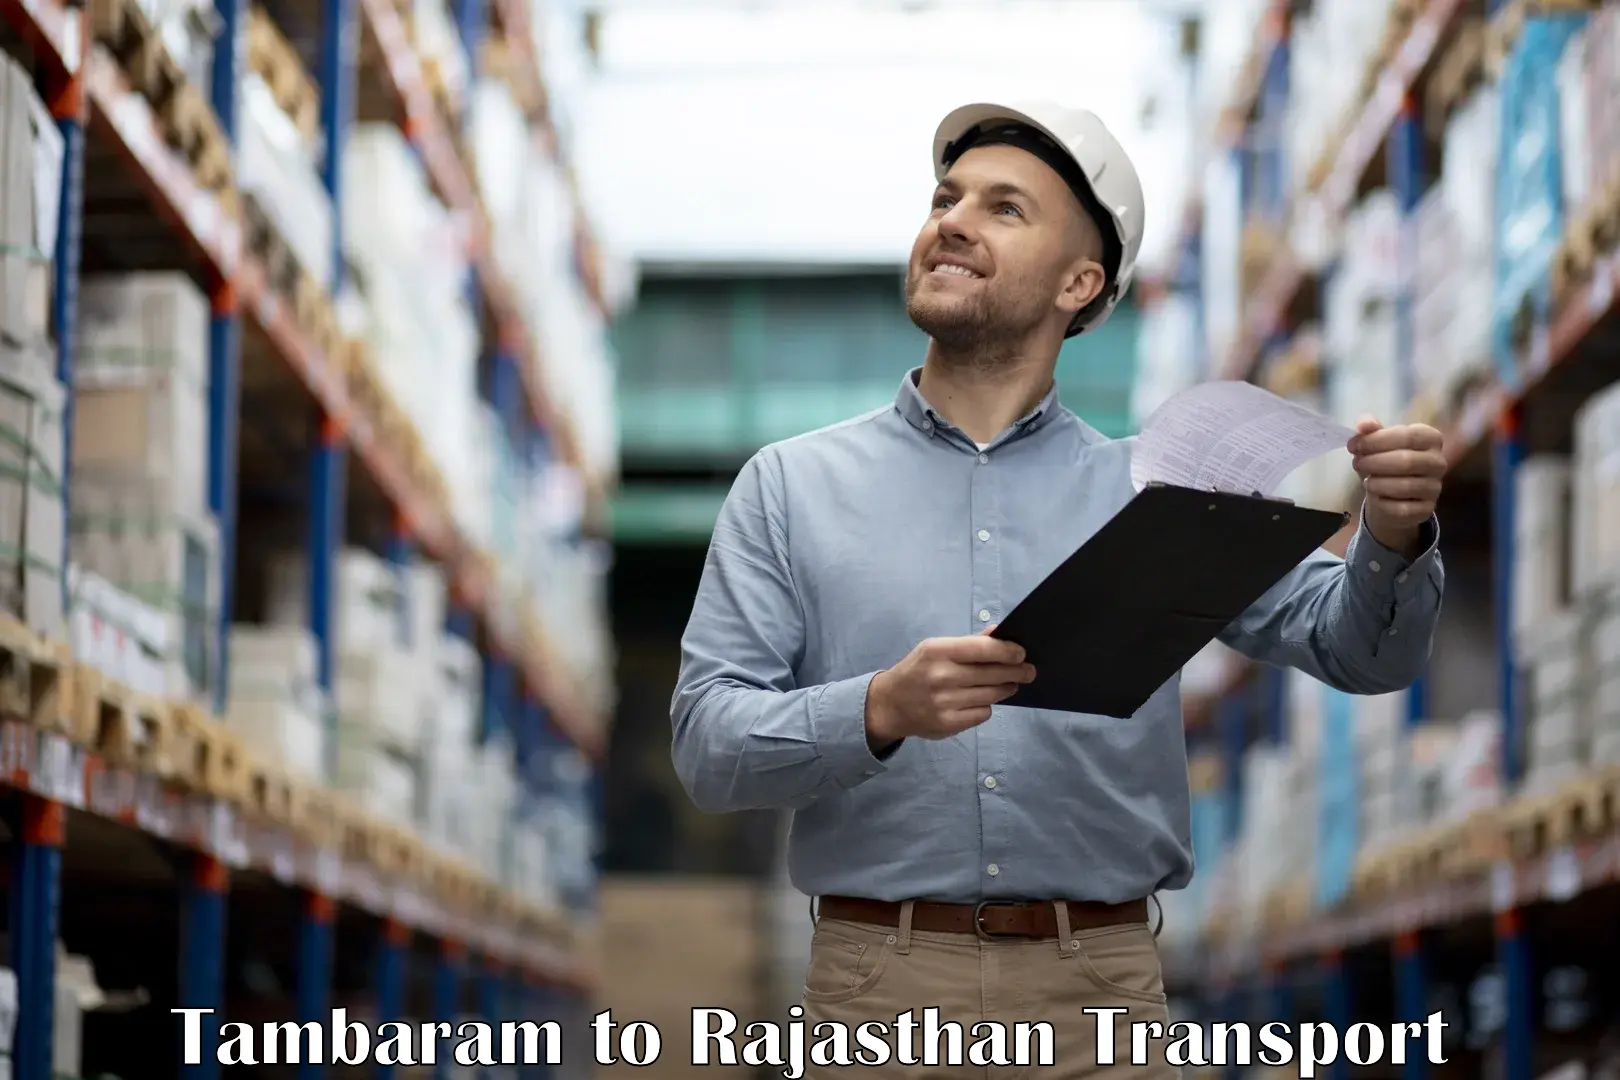 Goods delivery service Tambaram to Kumbhalgarh